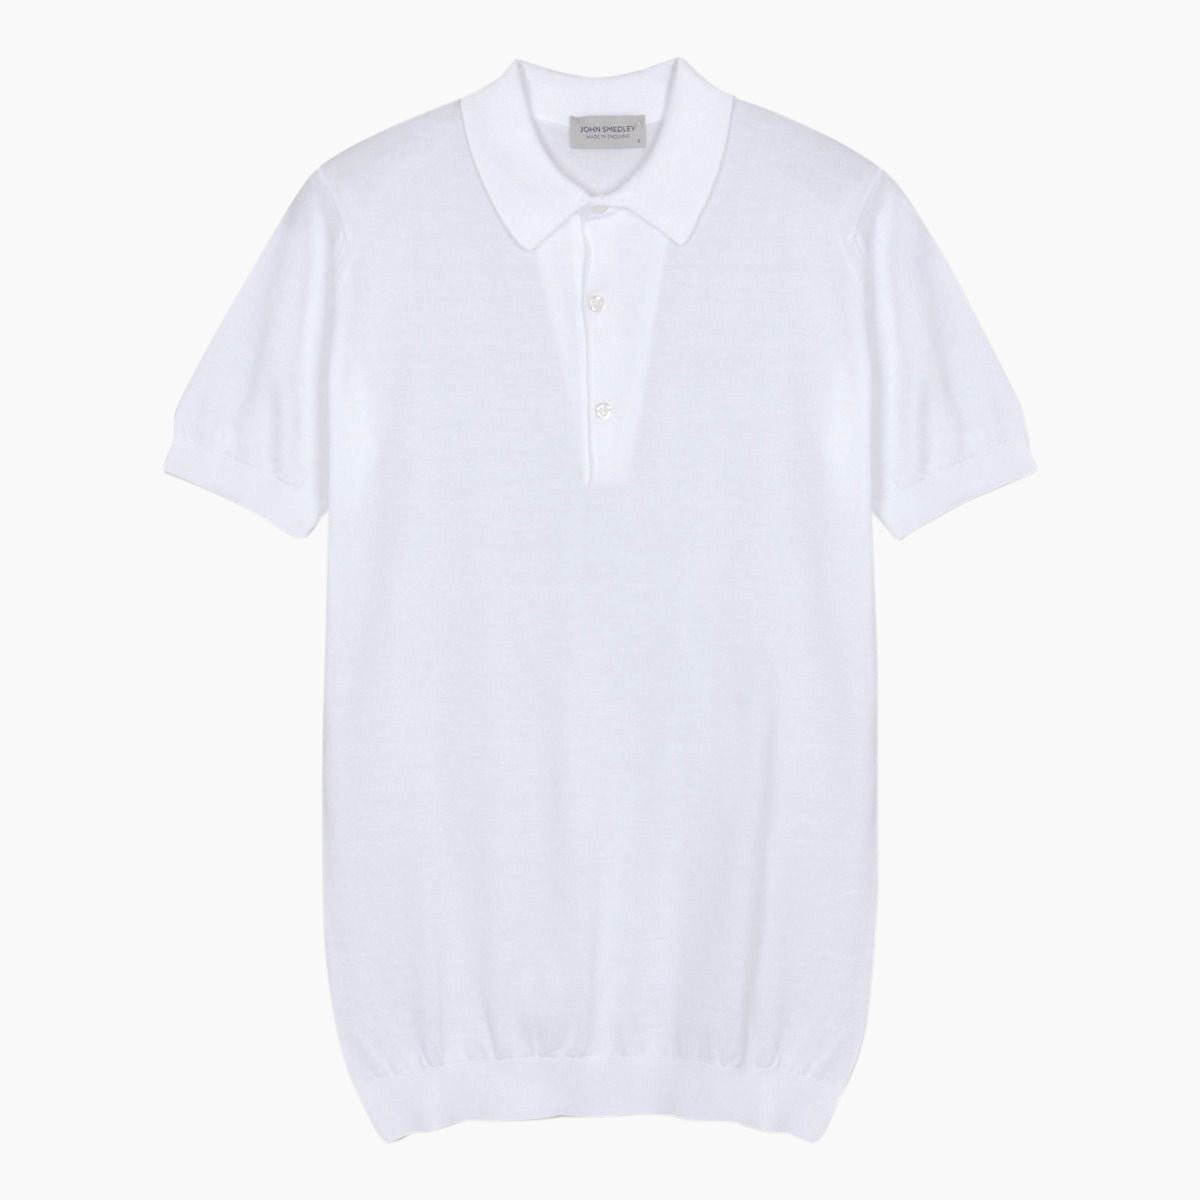 Adrian White Polo Shirt